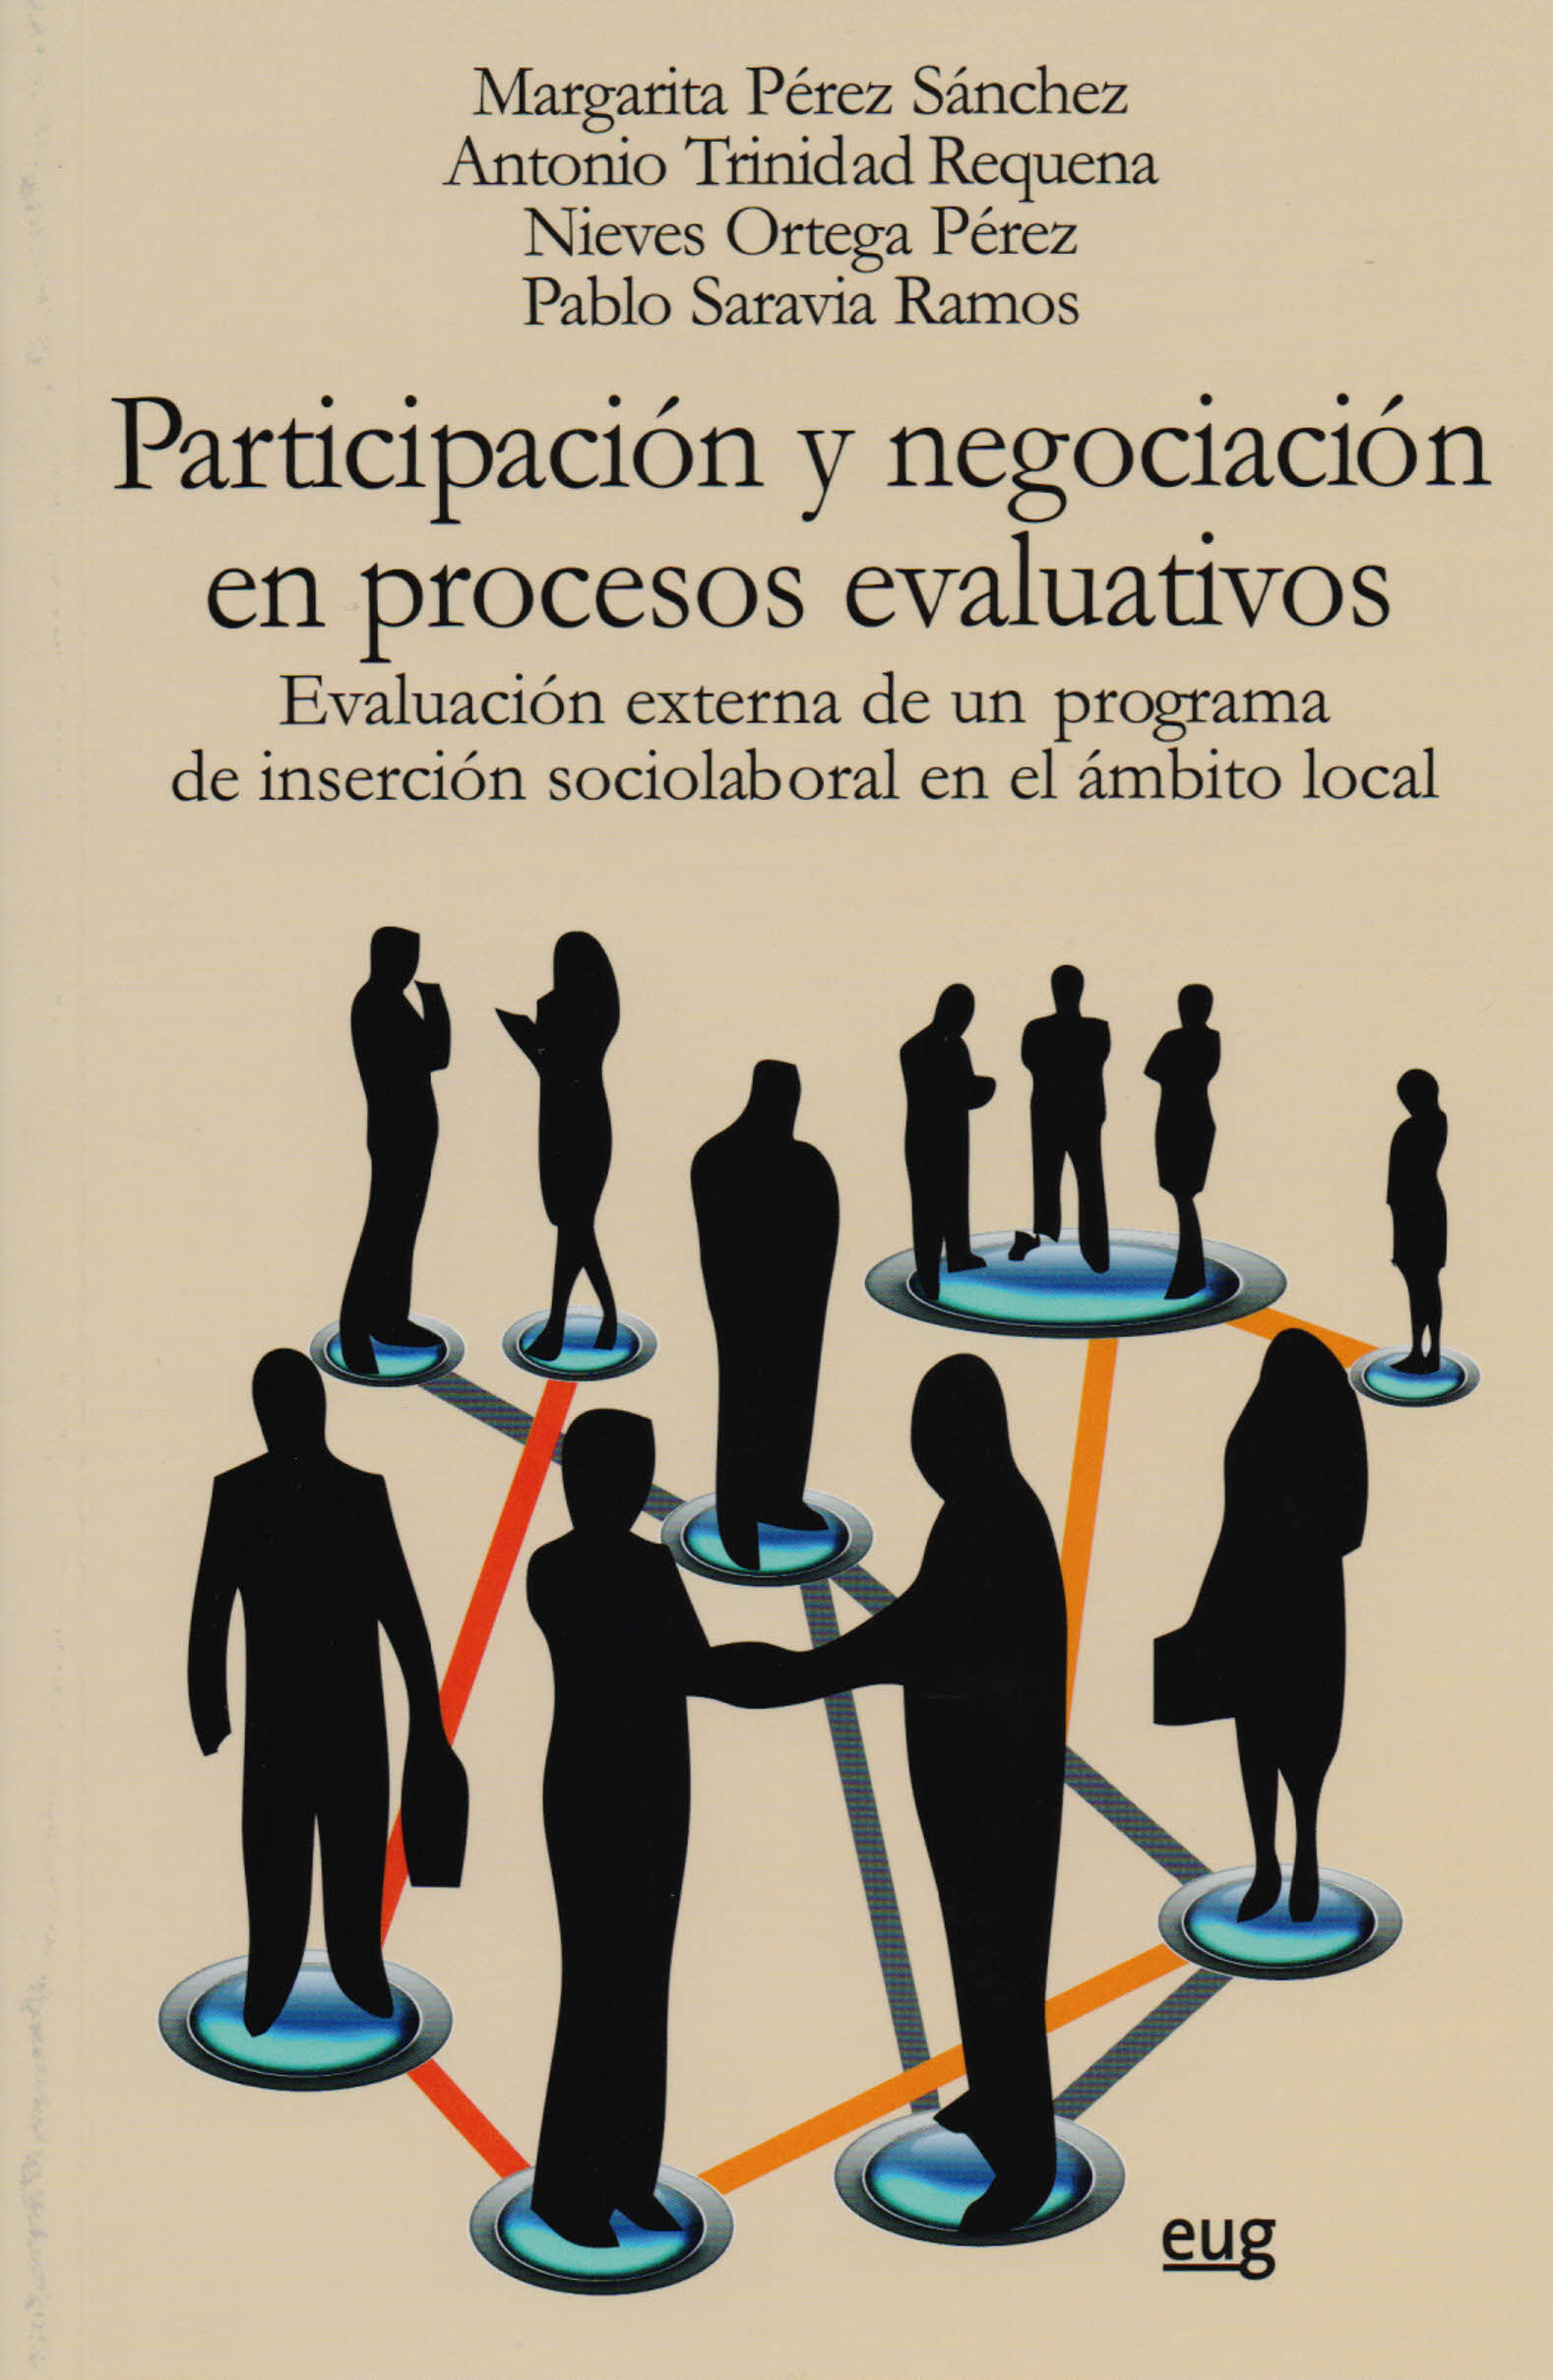 participacin-y-negociacin-en-procesos-evaluativos-11-02-16